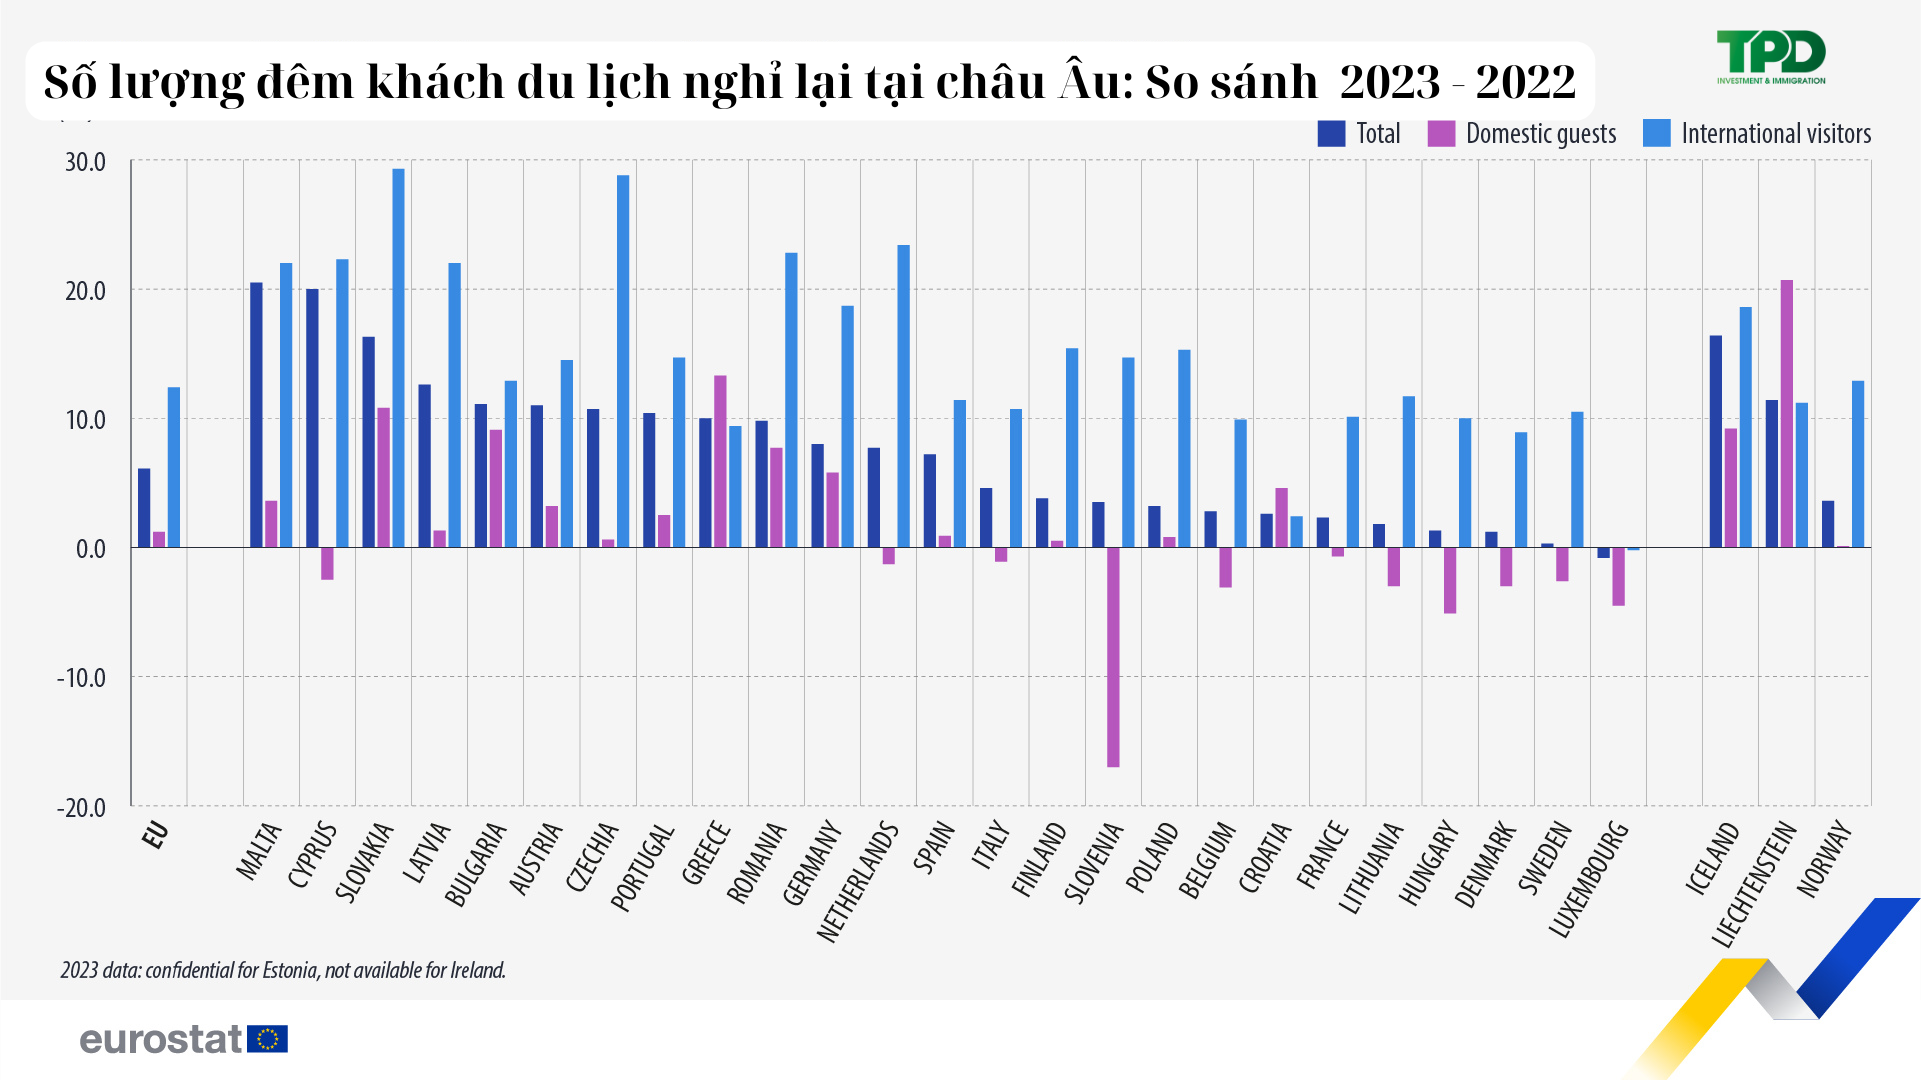 So sánh số lượng đêm khách du lịch đến với châu Âu năm 2023 và 2022